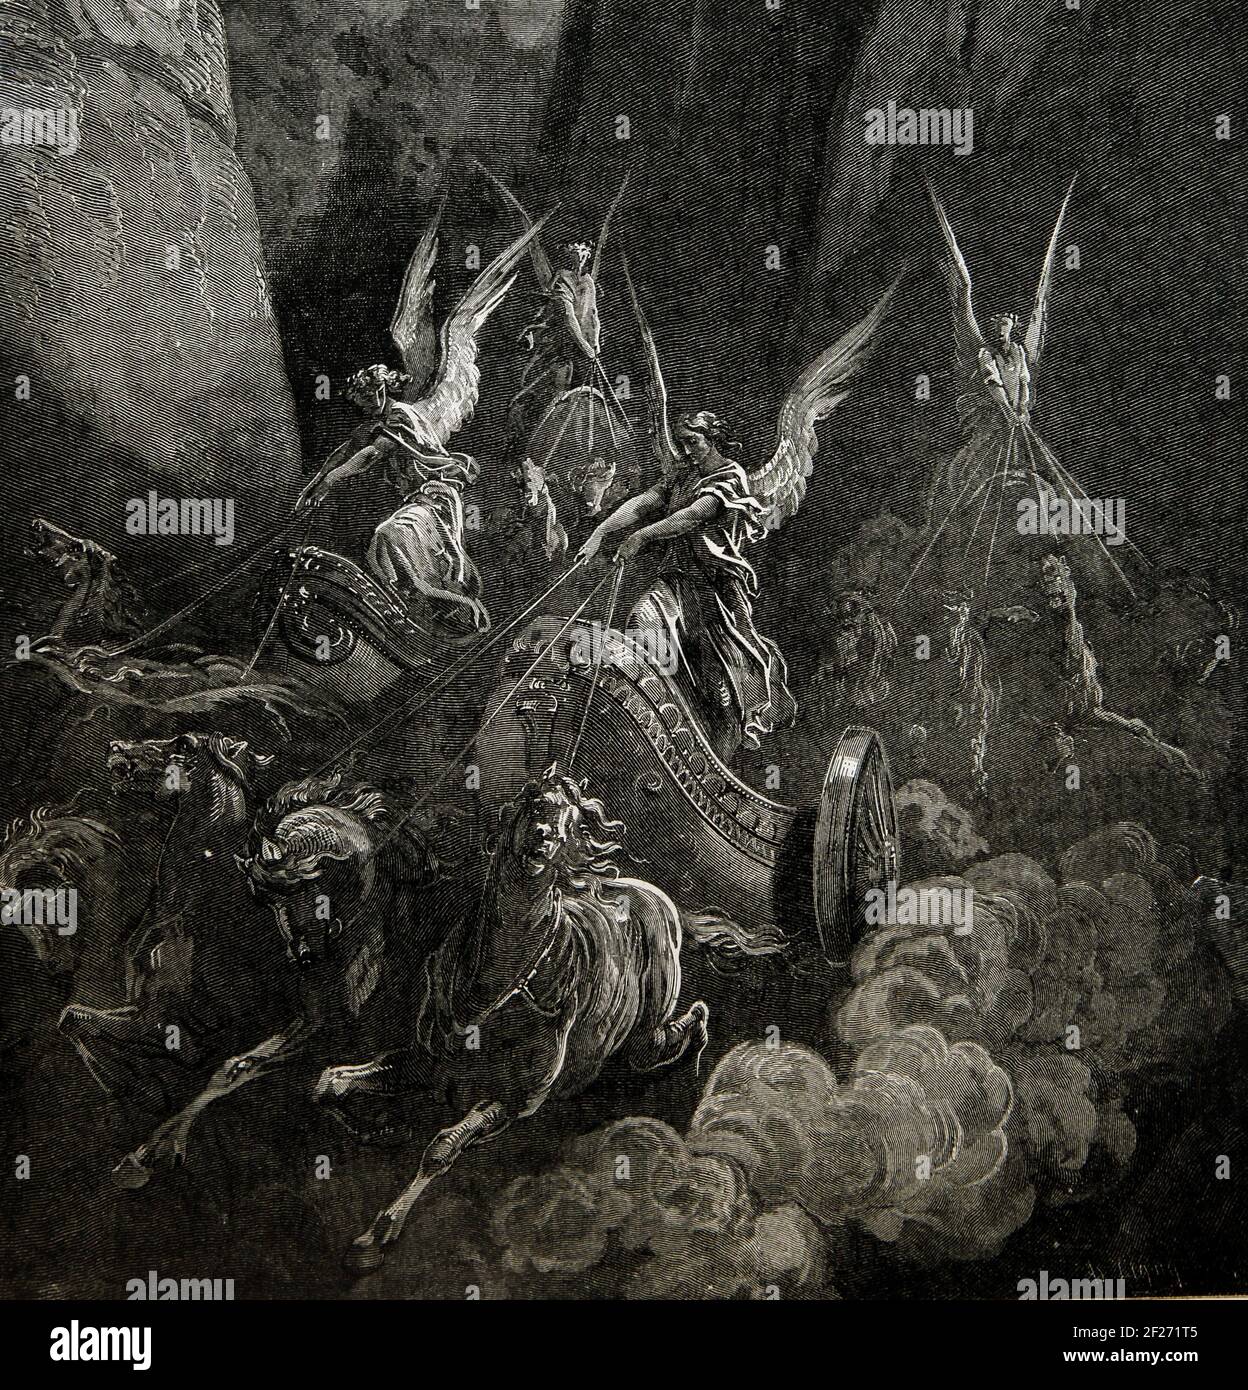 Storia della Bibbia Illustrazione della visione di Zaccaria dei quattro carri dell'Antico Testamento (Zaccaria 6:1) dall'Antico Testamento e da Nevi'im Foto Stock